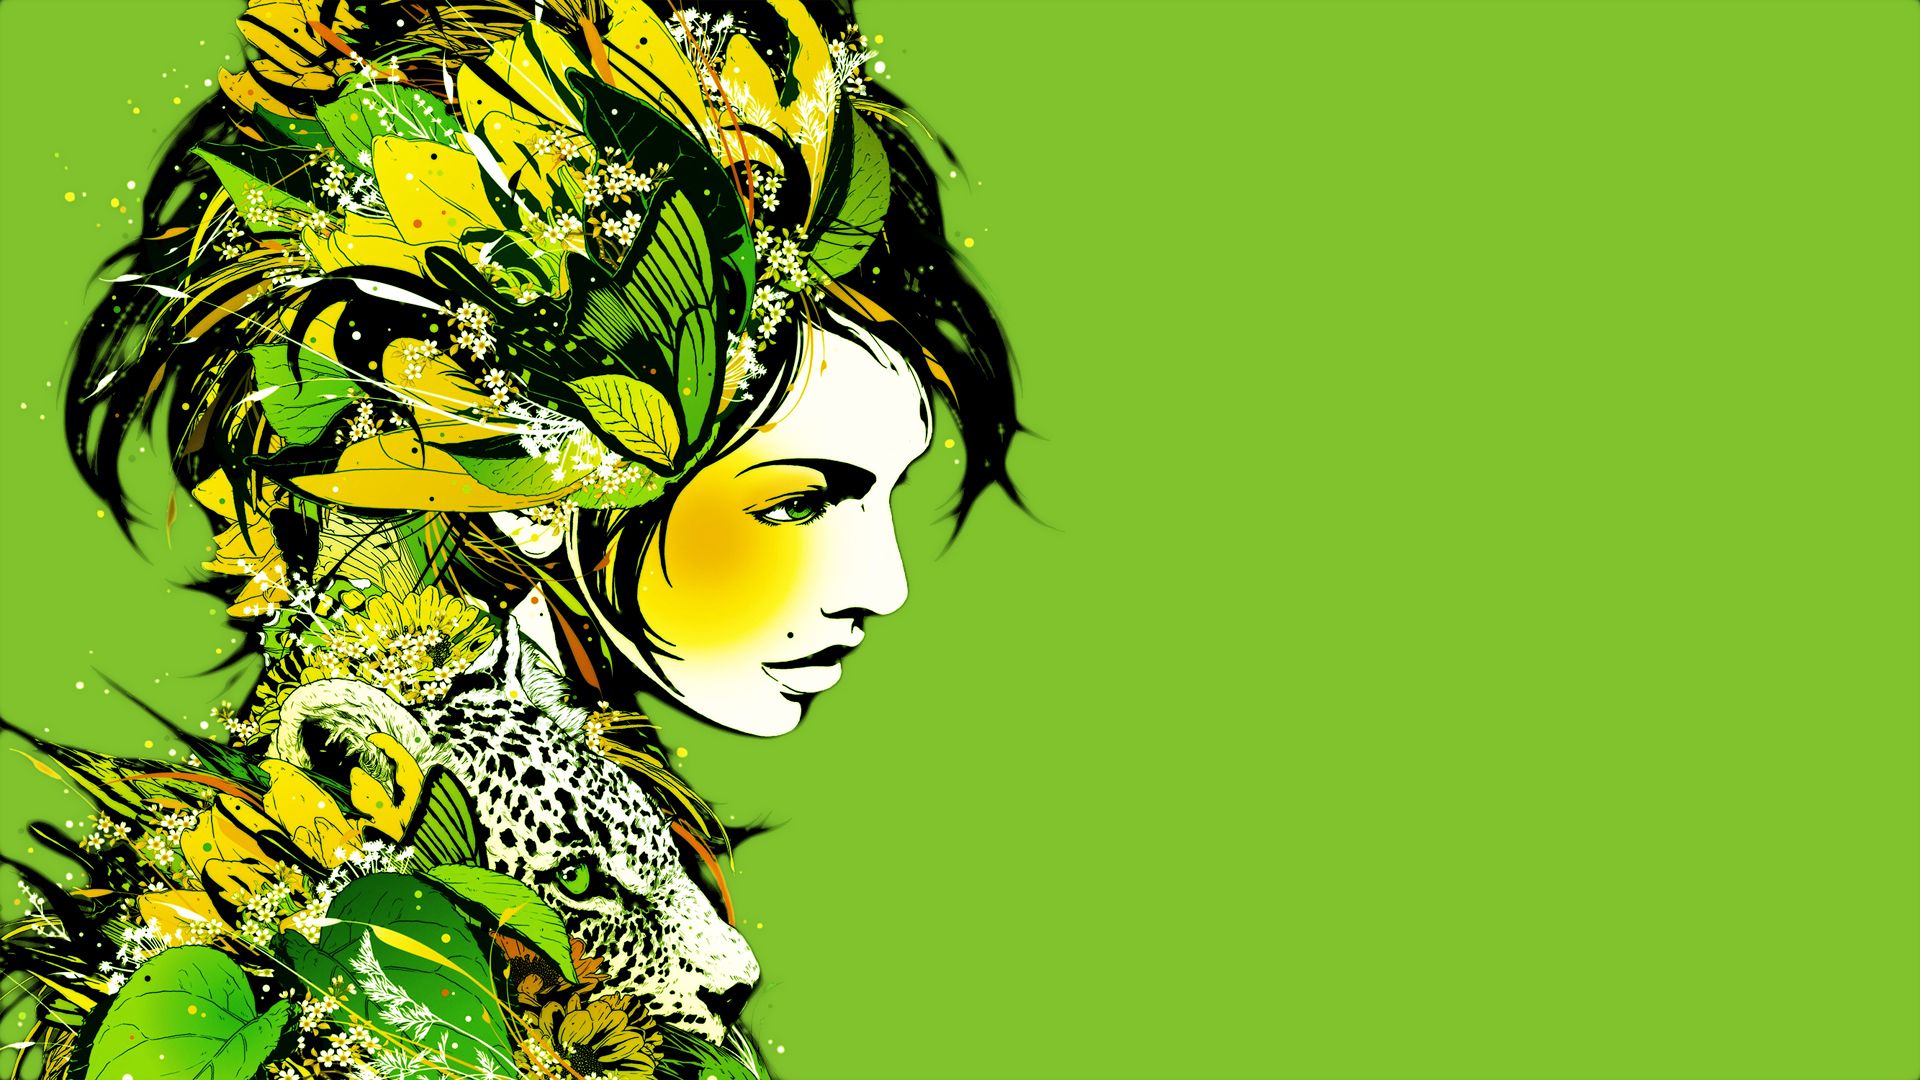 Green Art Wallpaper Free Green Art Background